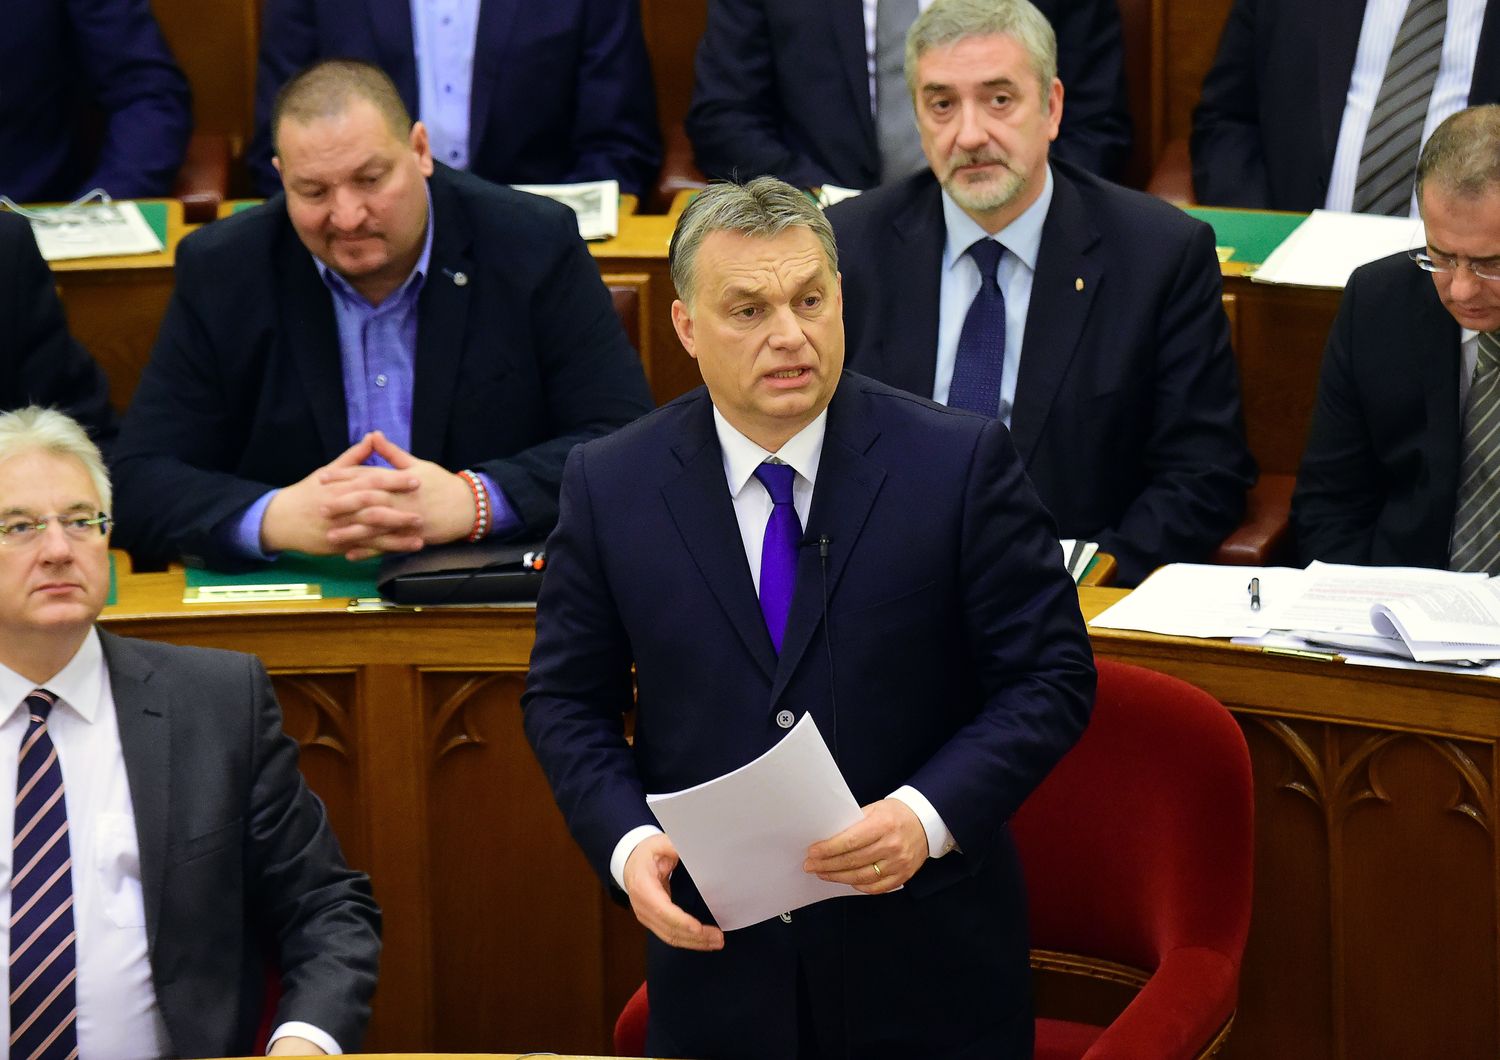 &nbsp;Ungheria primo ministro Viktor Orban migranti - afp